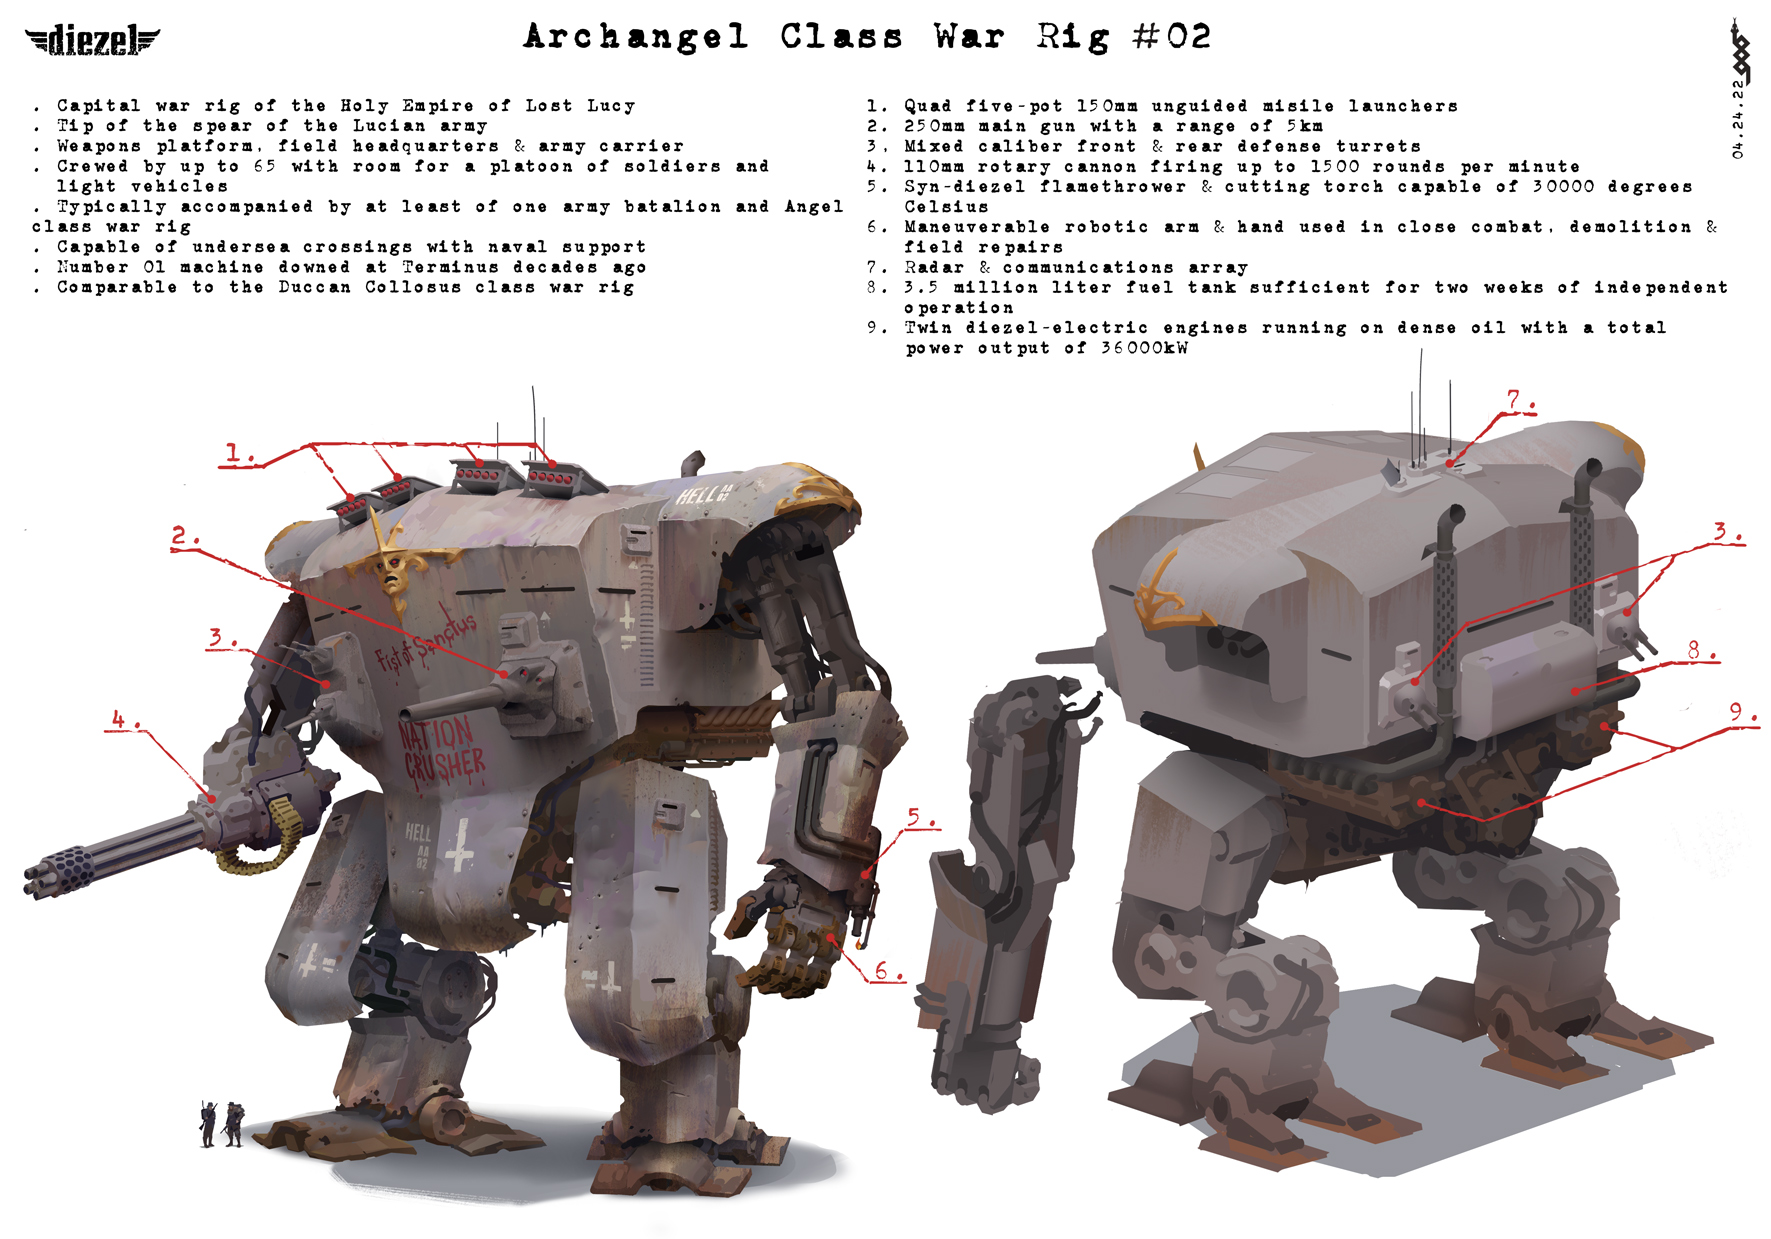 Archangel Class War Rig #02 - Details by z4ltys on DeviantArt